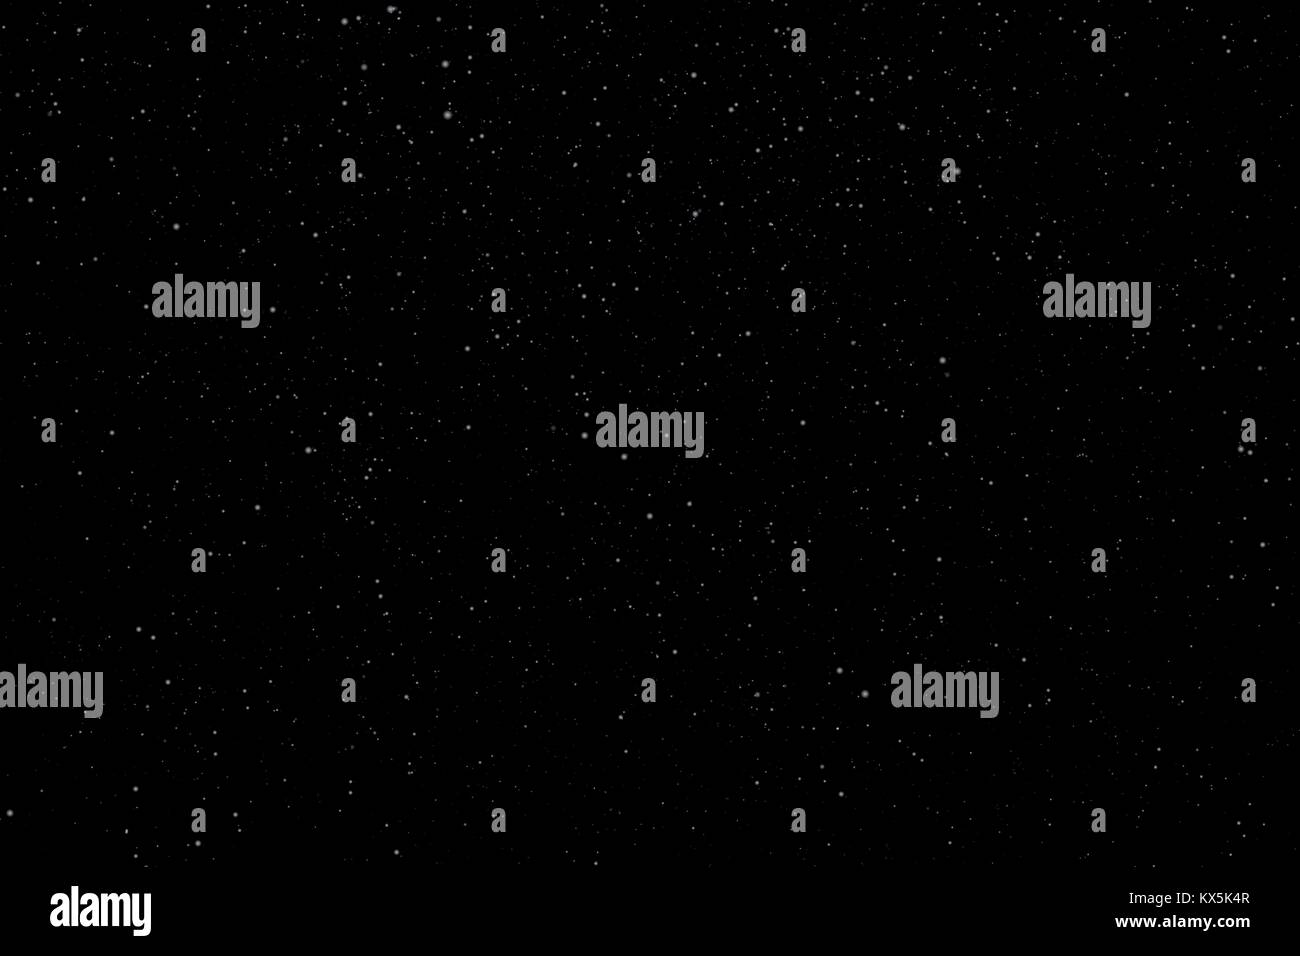 Notte cielo stellato con le stelle e i pianeti adatti come sfondo - Vettore Illustrazione Vettoriale